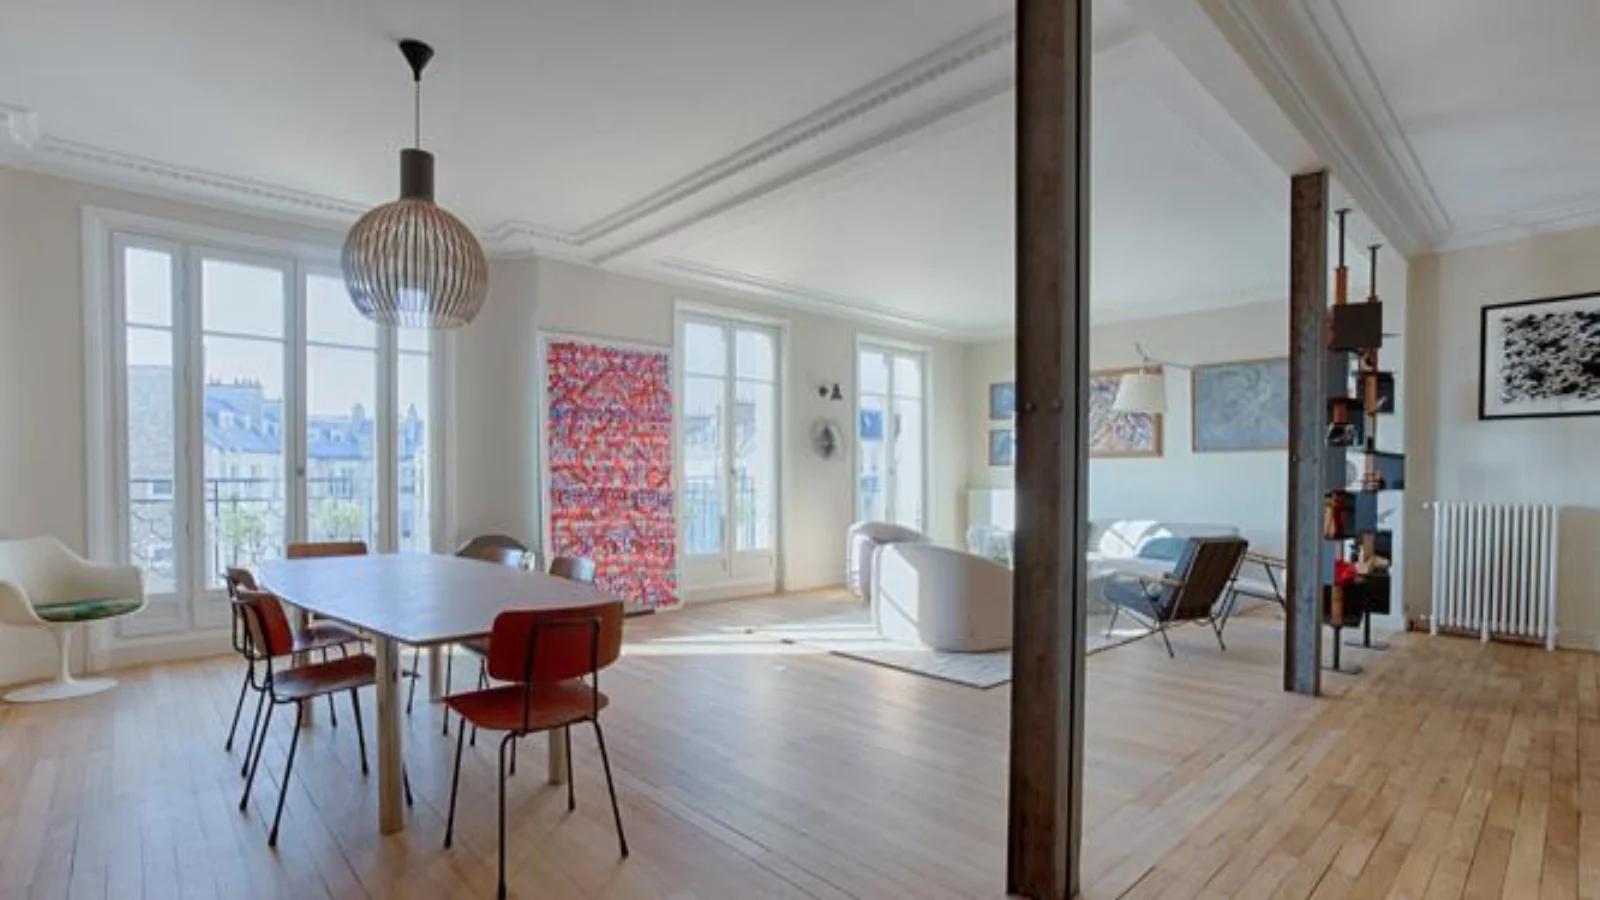 Meeting room in Duplex apartment in the Paris skyline - 16th arrondissement - 0